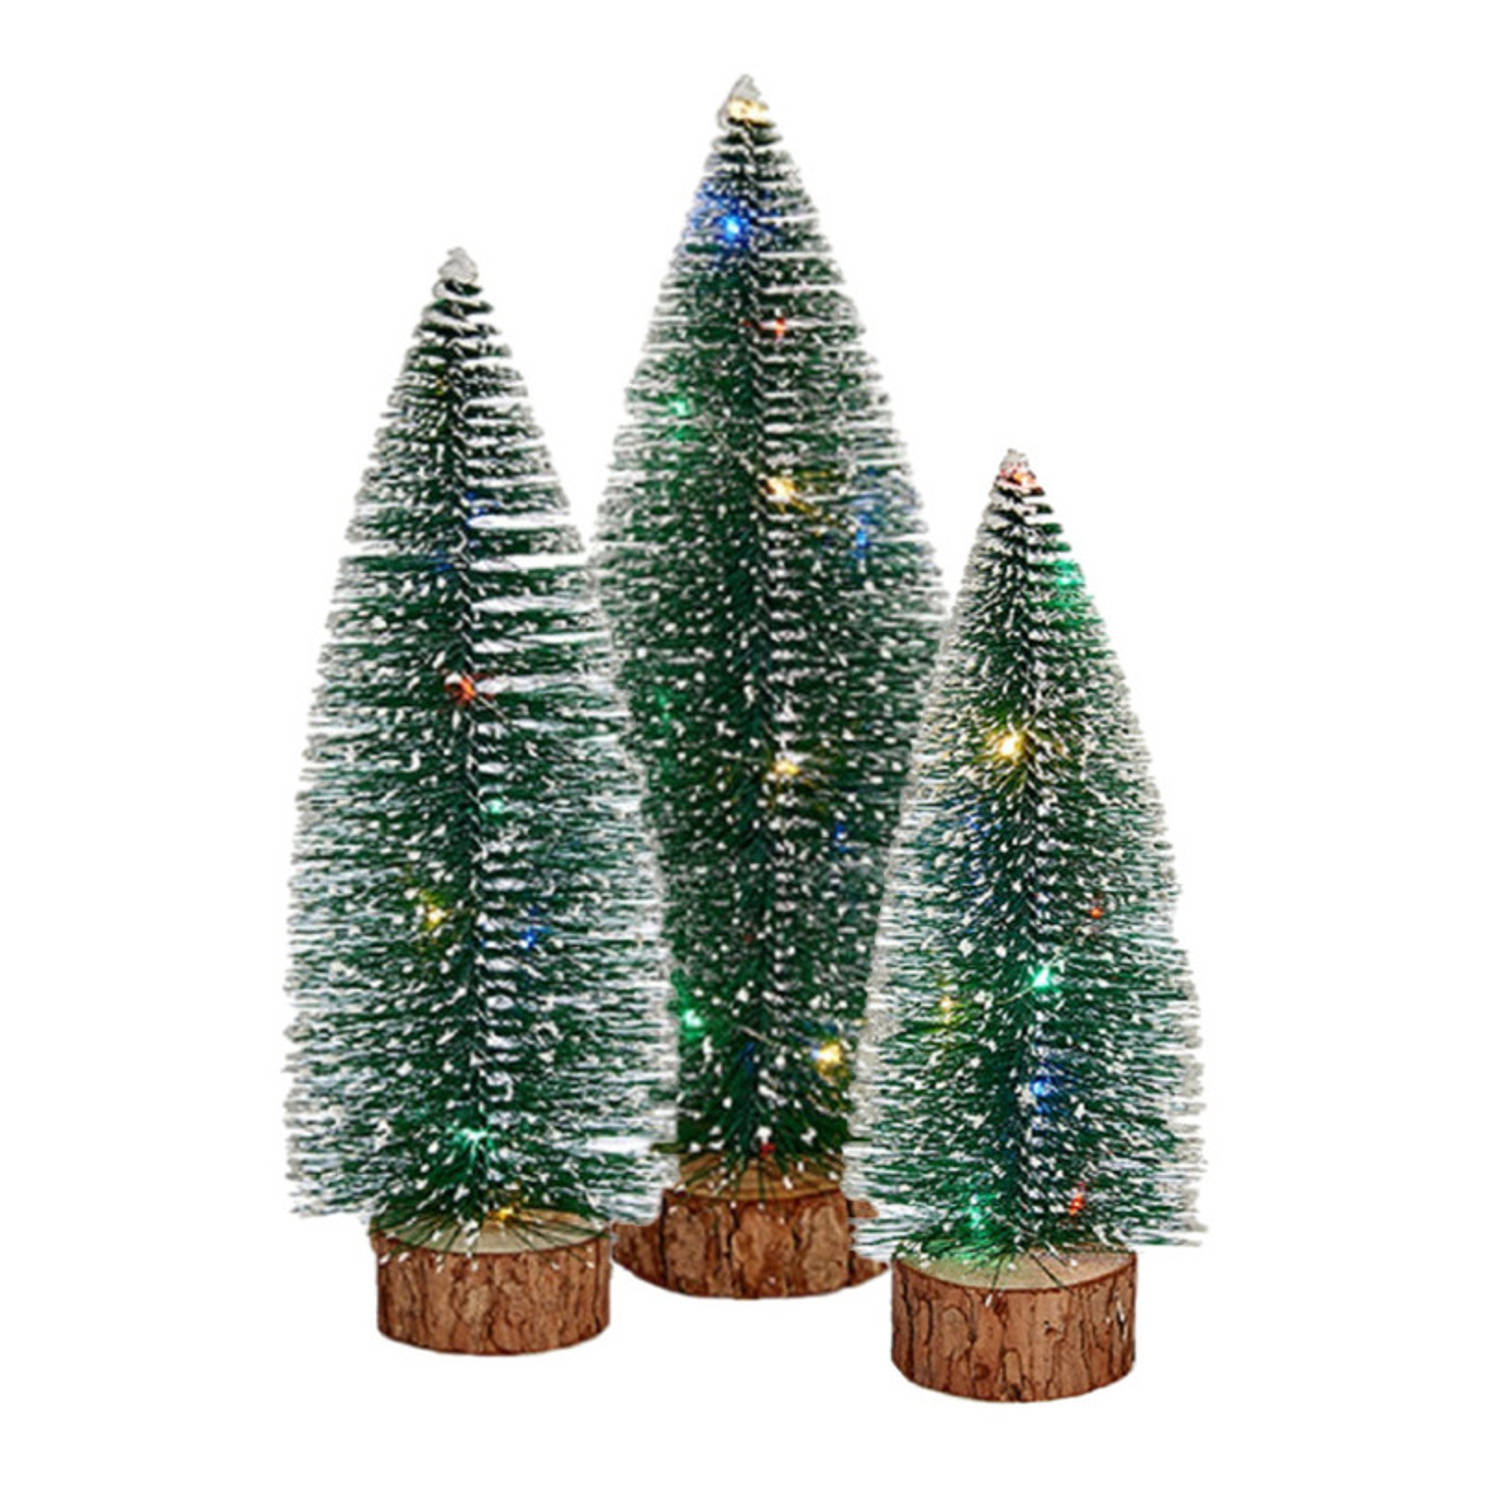 Kleine-mini Decoratie Kerstboompjes Set Van 3x St Met Gekleurd Licht 25-35 Cm Kerstdorpen